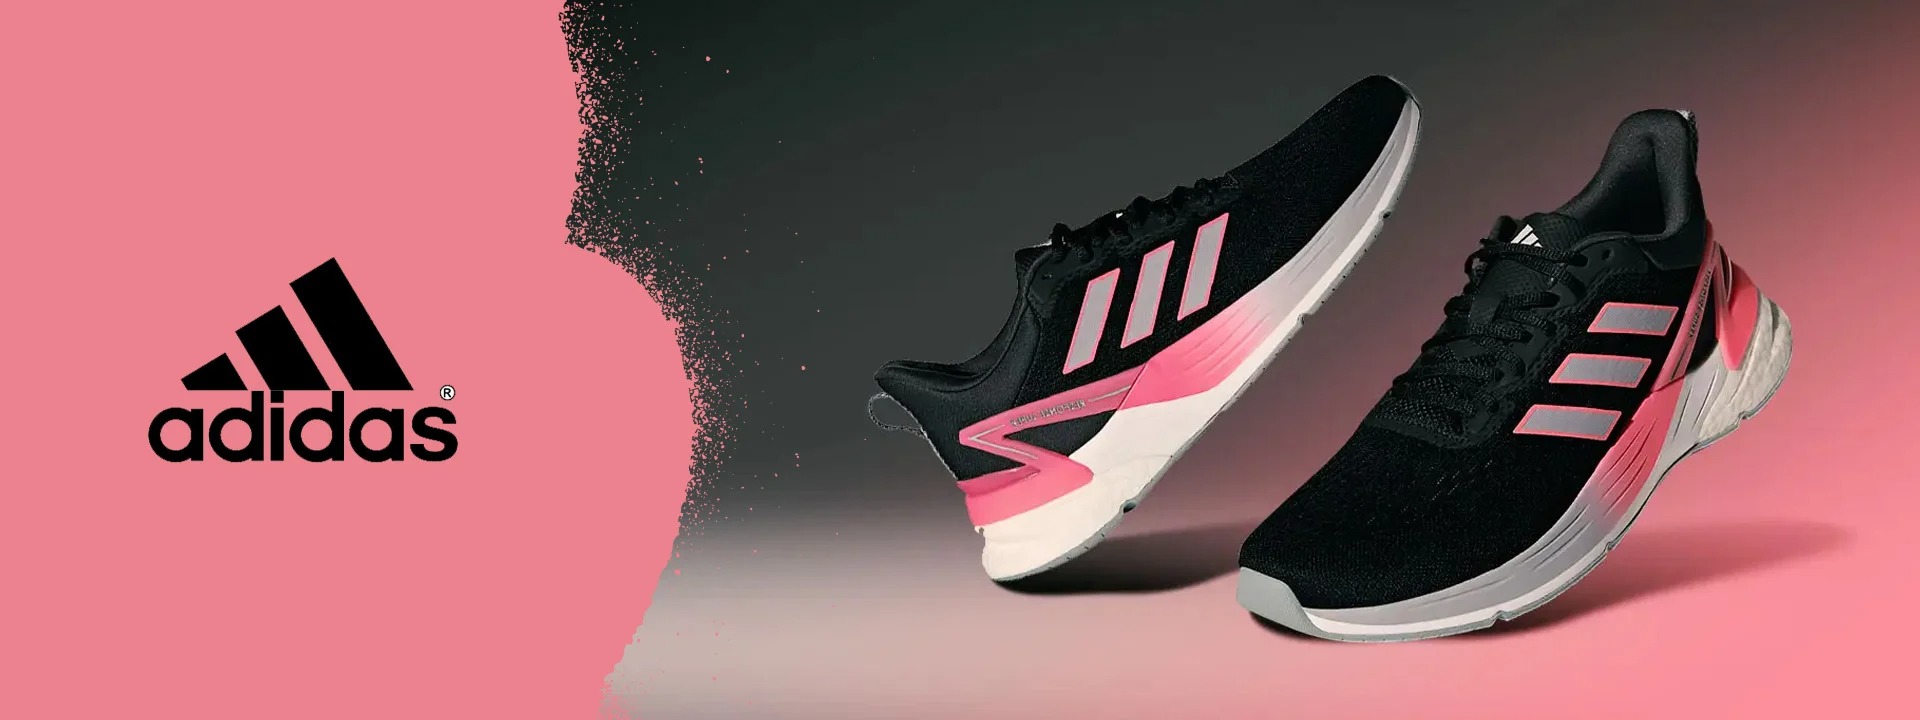 Adidas - từ xưởng giày tạm bợ đến thương hiệu hàng đầu thế giới, nâng niu  từng đôi chân các thượng đế bằng cả tấm lòng